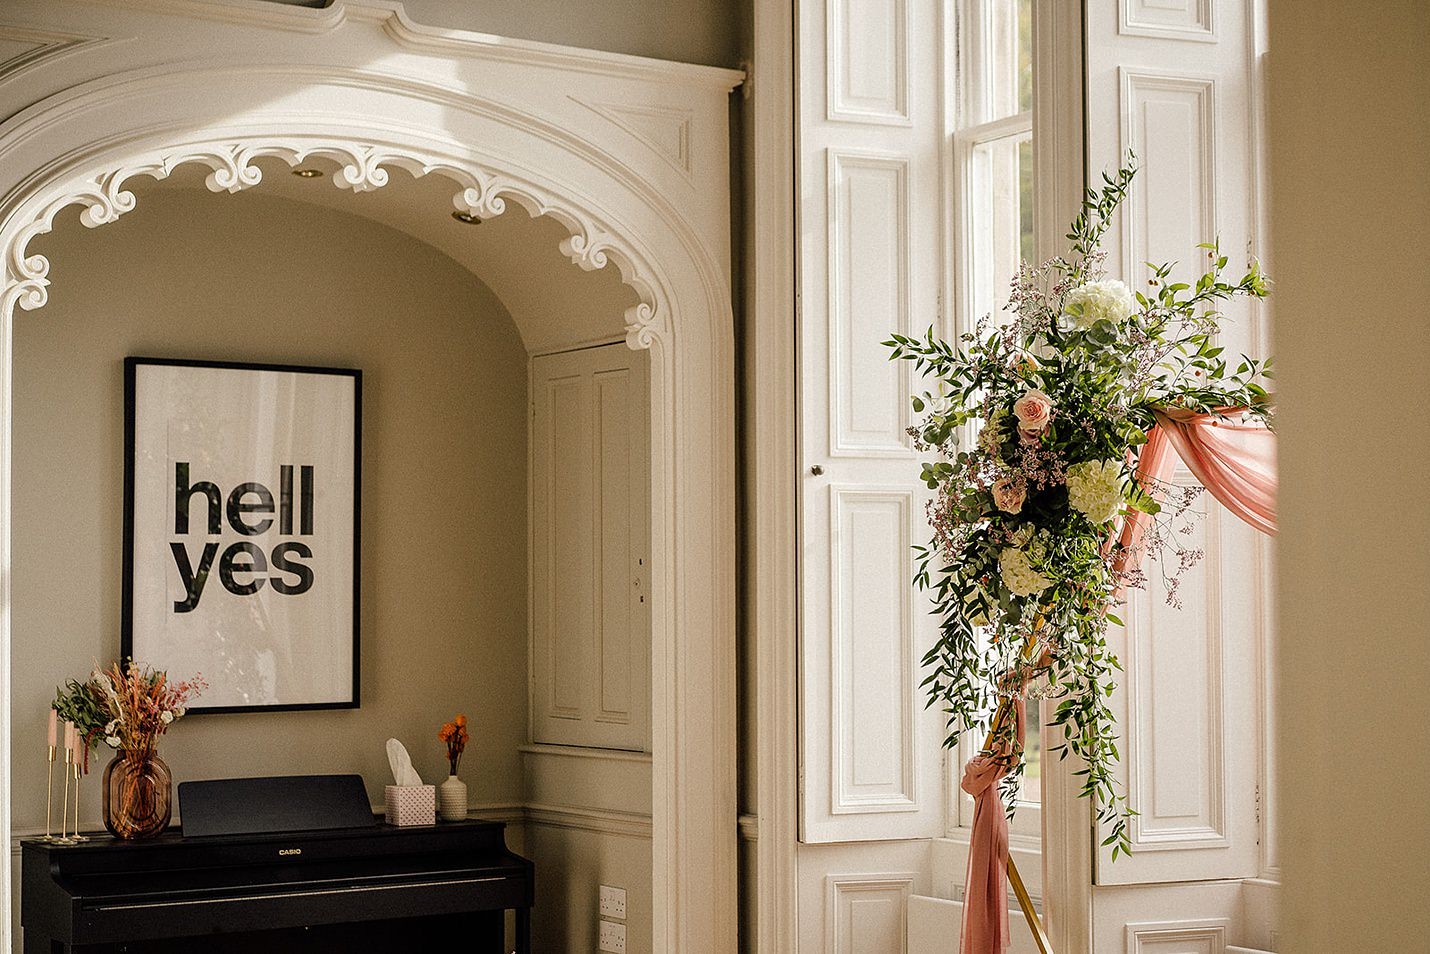 intérieur de la maison netherbyres, arche de fleurs pastel, fenêtre lambrissée